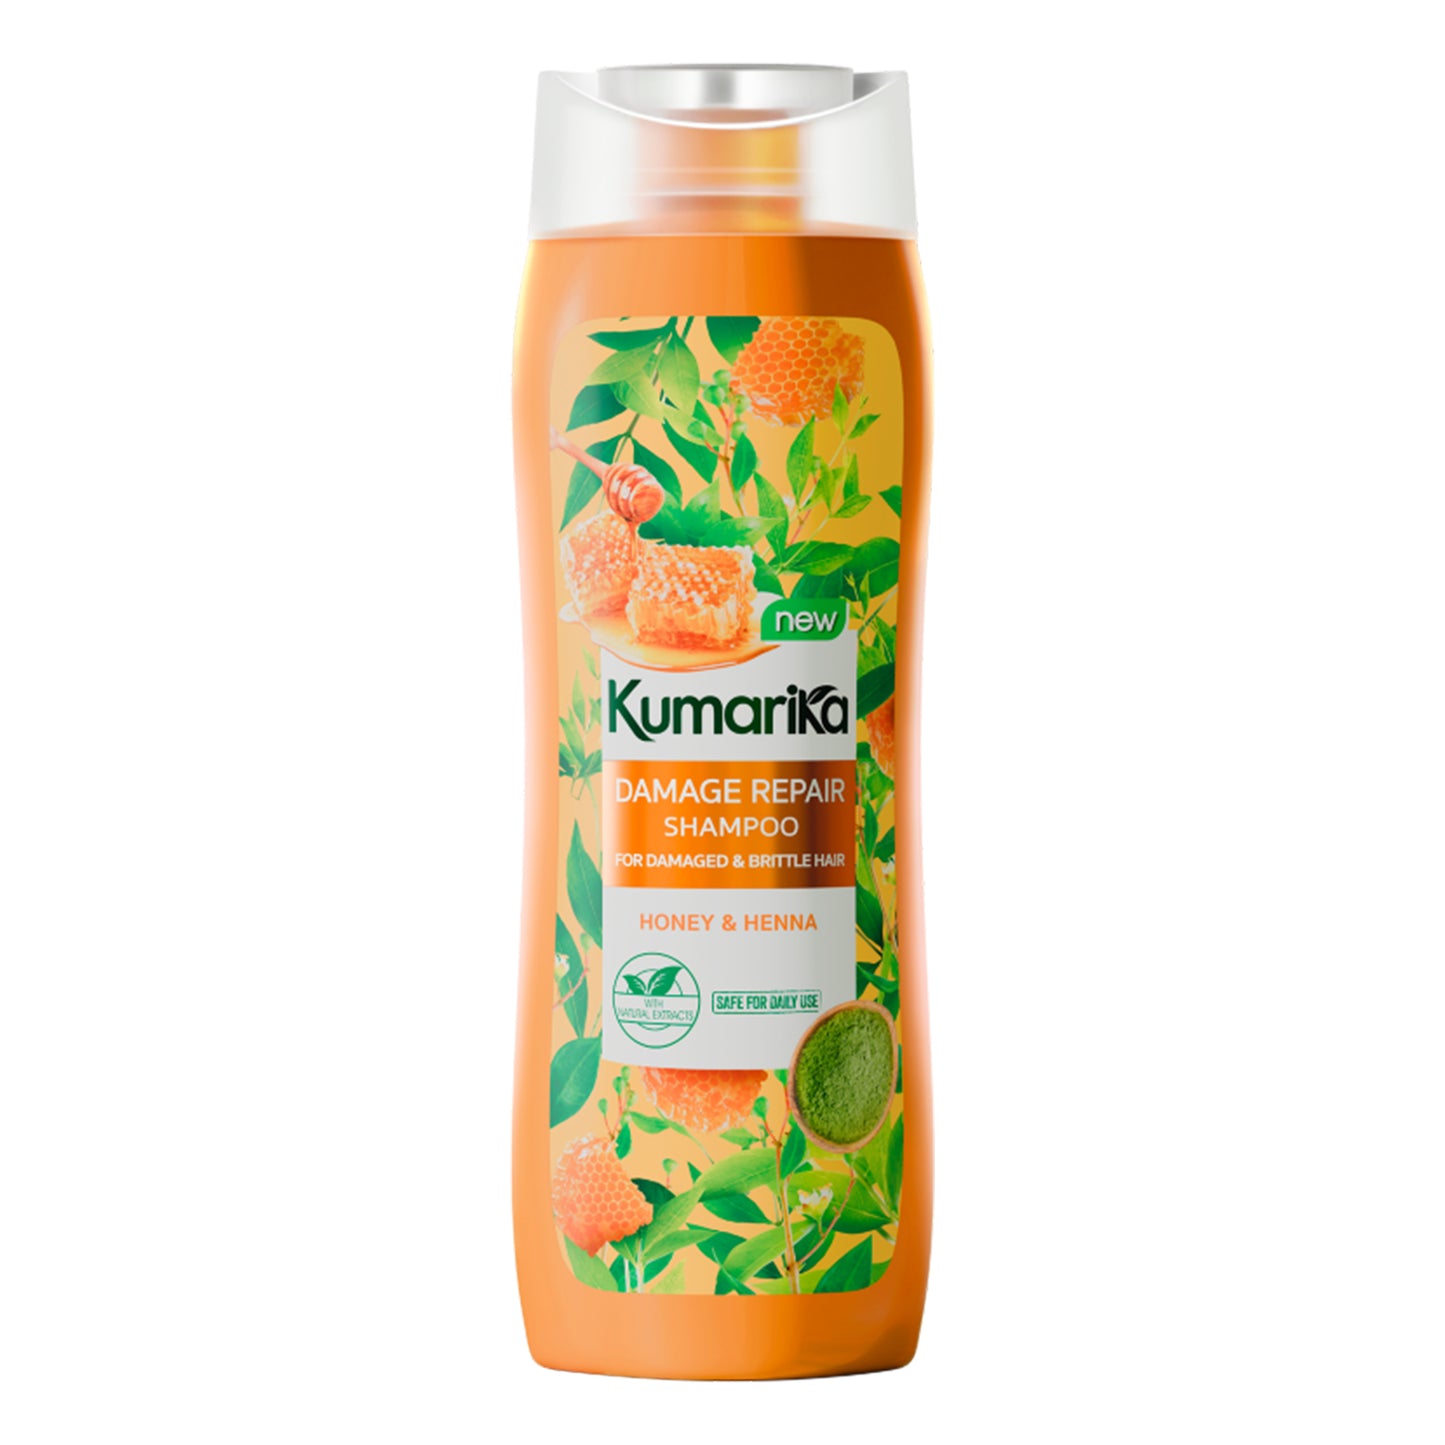 Kumarika Damage Repair Shampoo